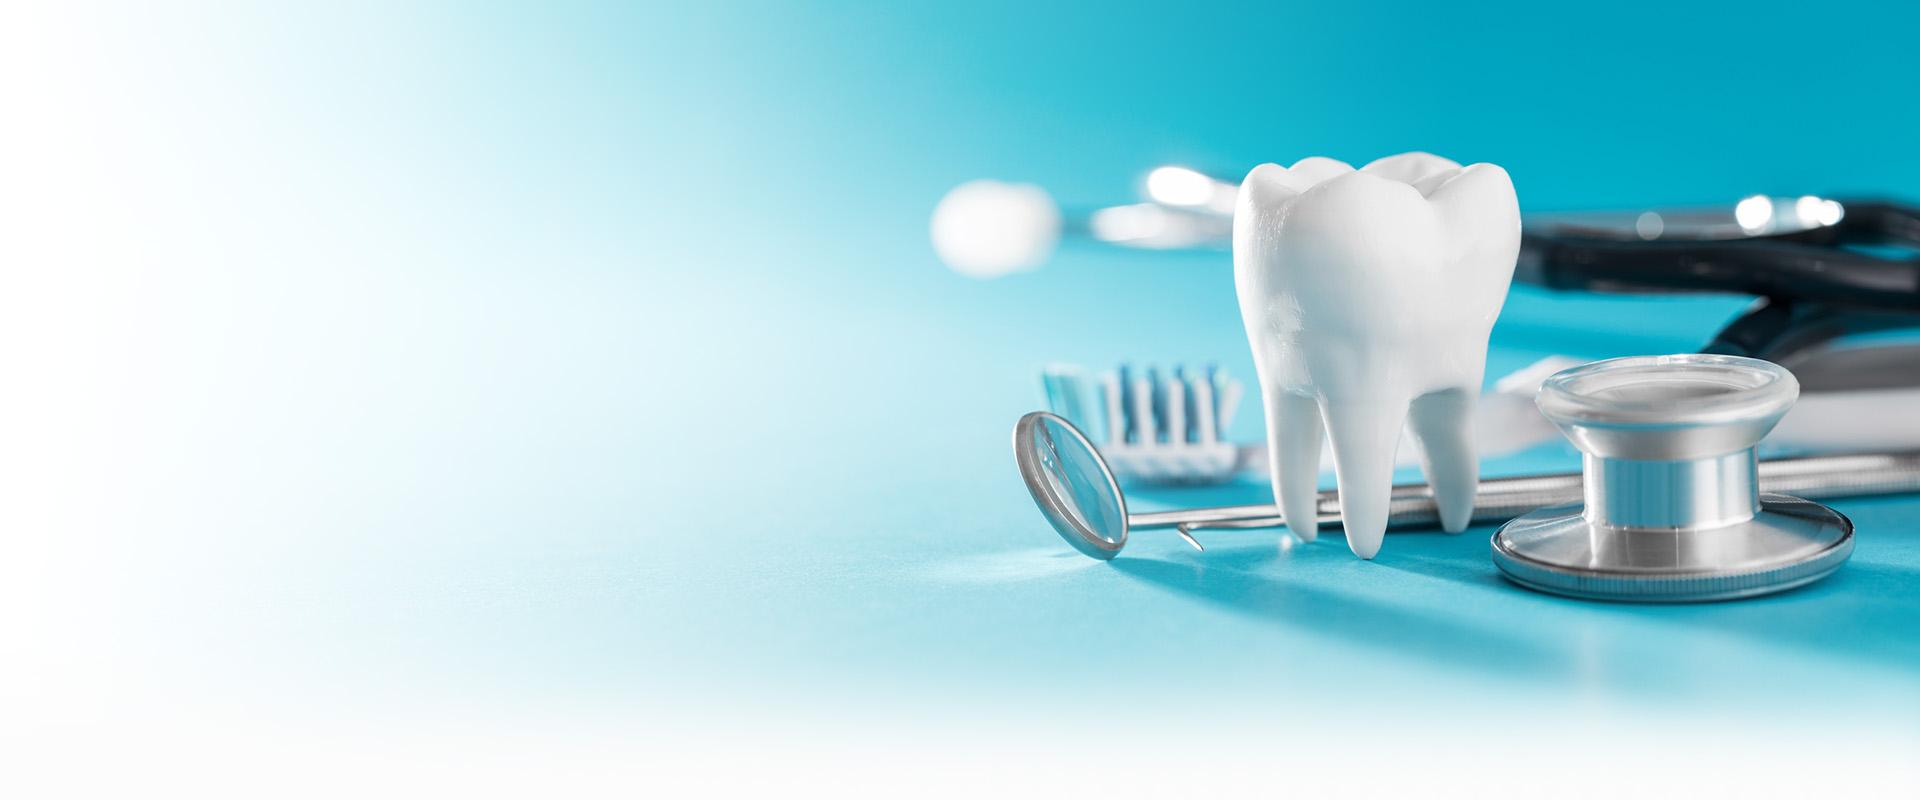 Ząb i przyrządy dentystyczne